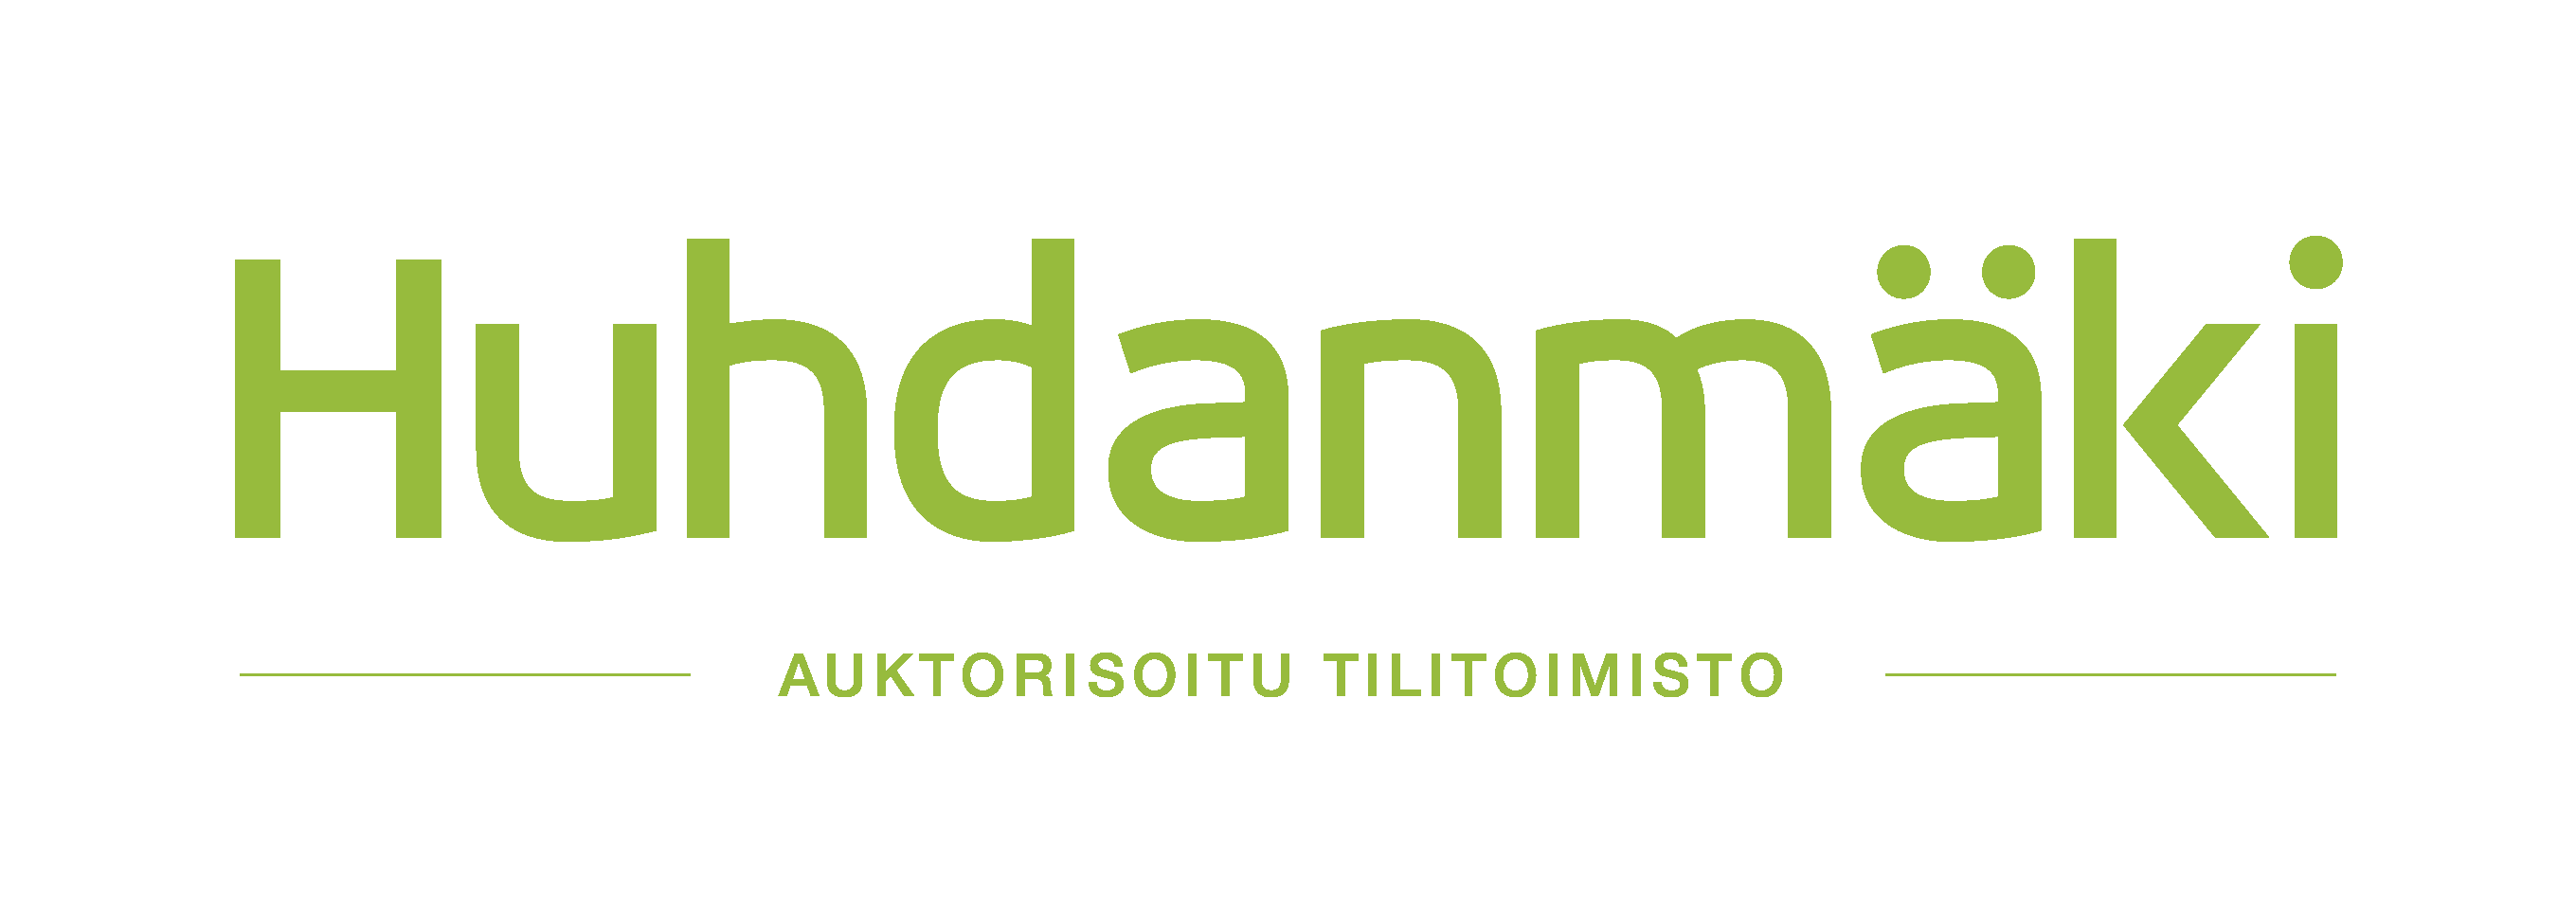 logo_koko_vihreä